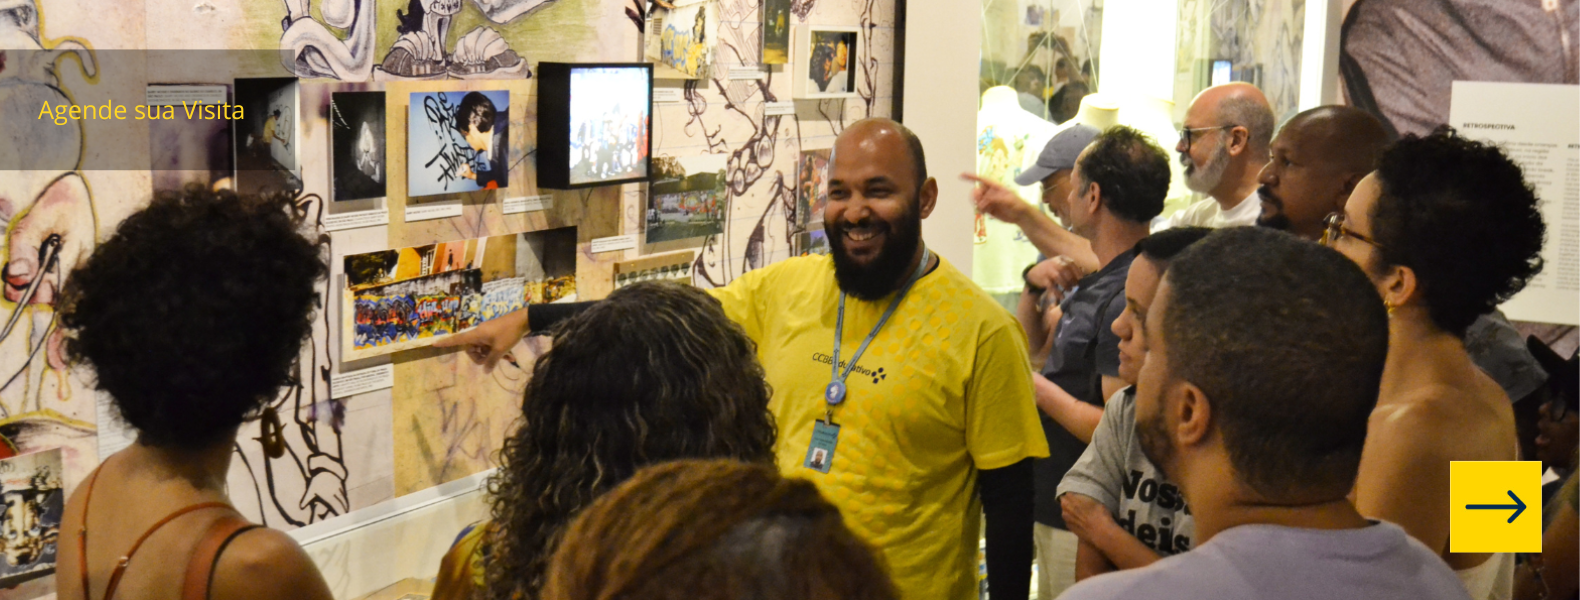 Educador aponta para obra na sala de exposições enquanto é observado por diversos visitantes.